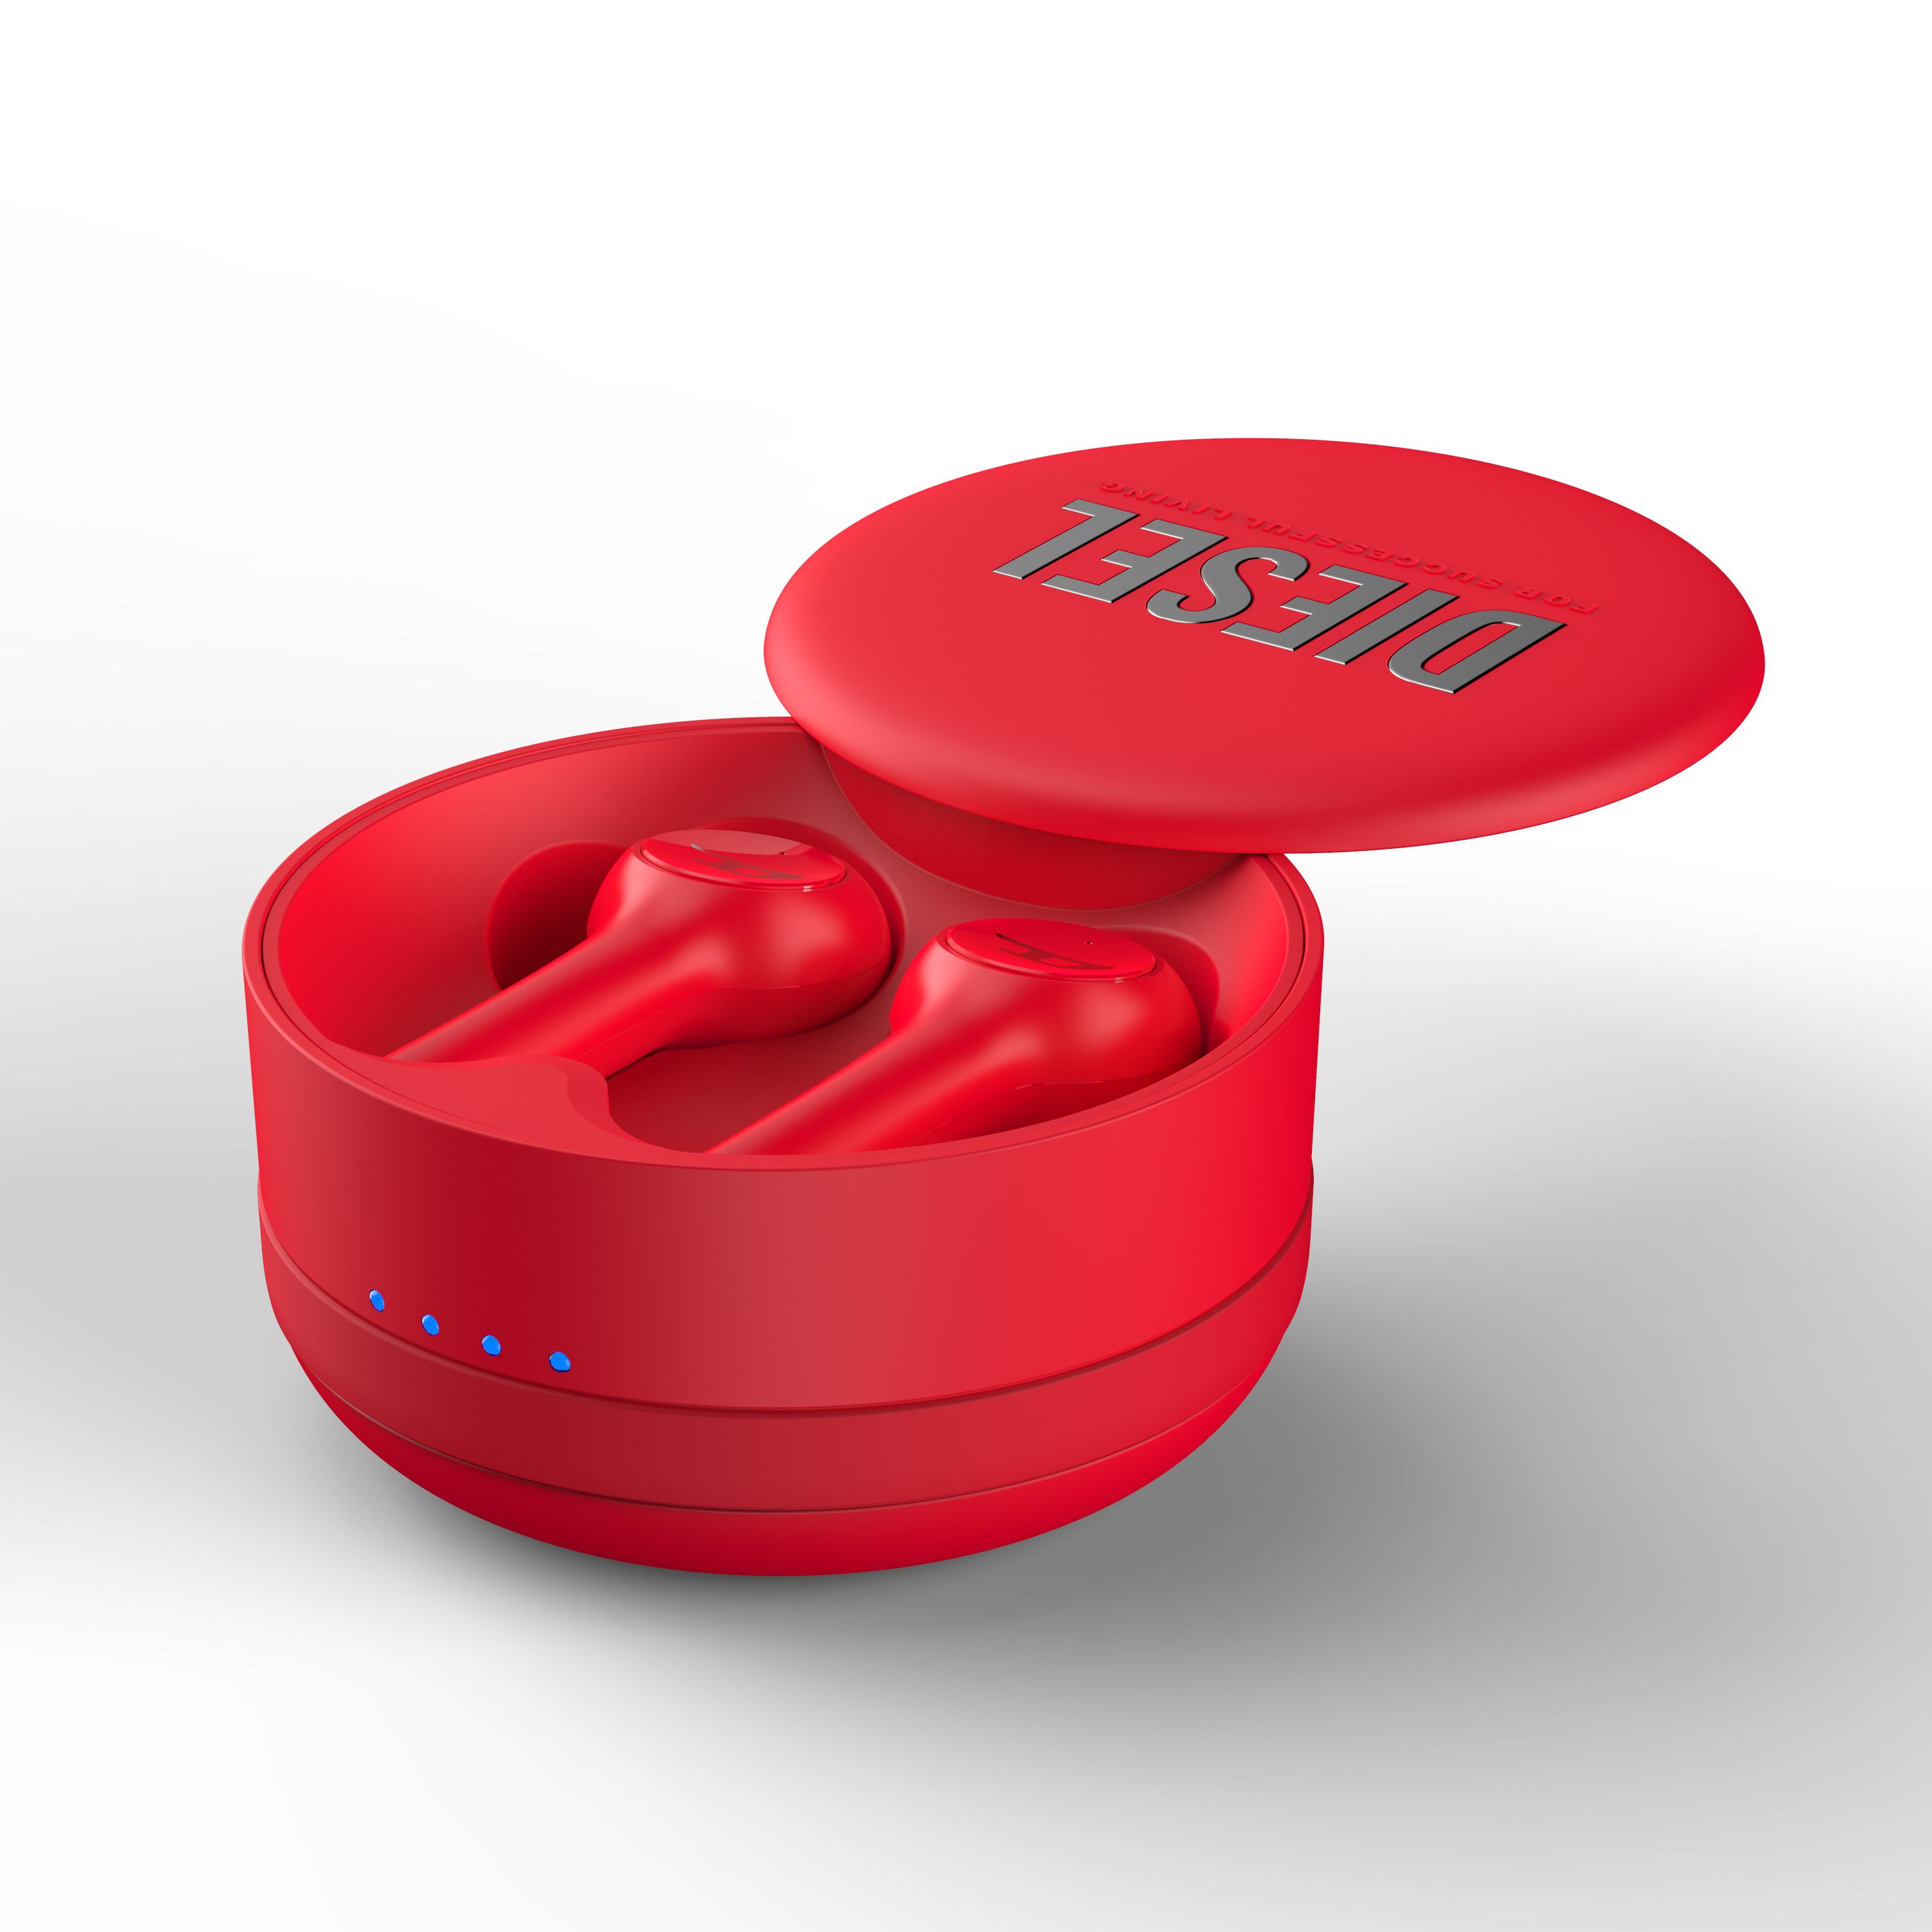 Cuffia con microfono DIESEL 45476 cuffia e auricolare True Wireless Stereo (TWS) In-ear Musica Chiamate Bluetooth Rosso [45476]